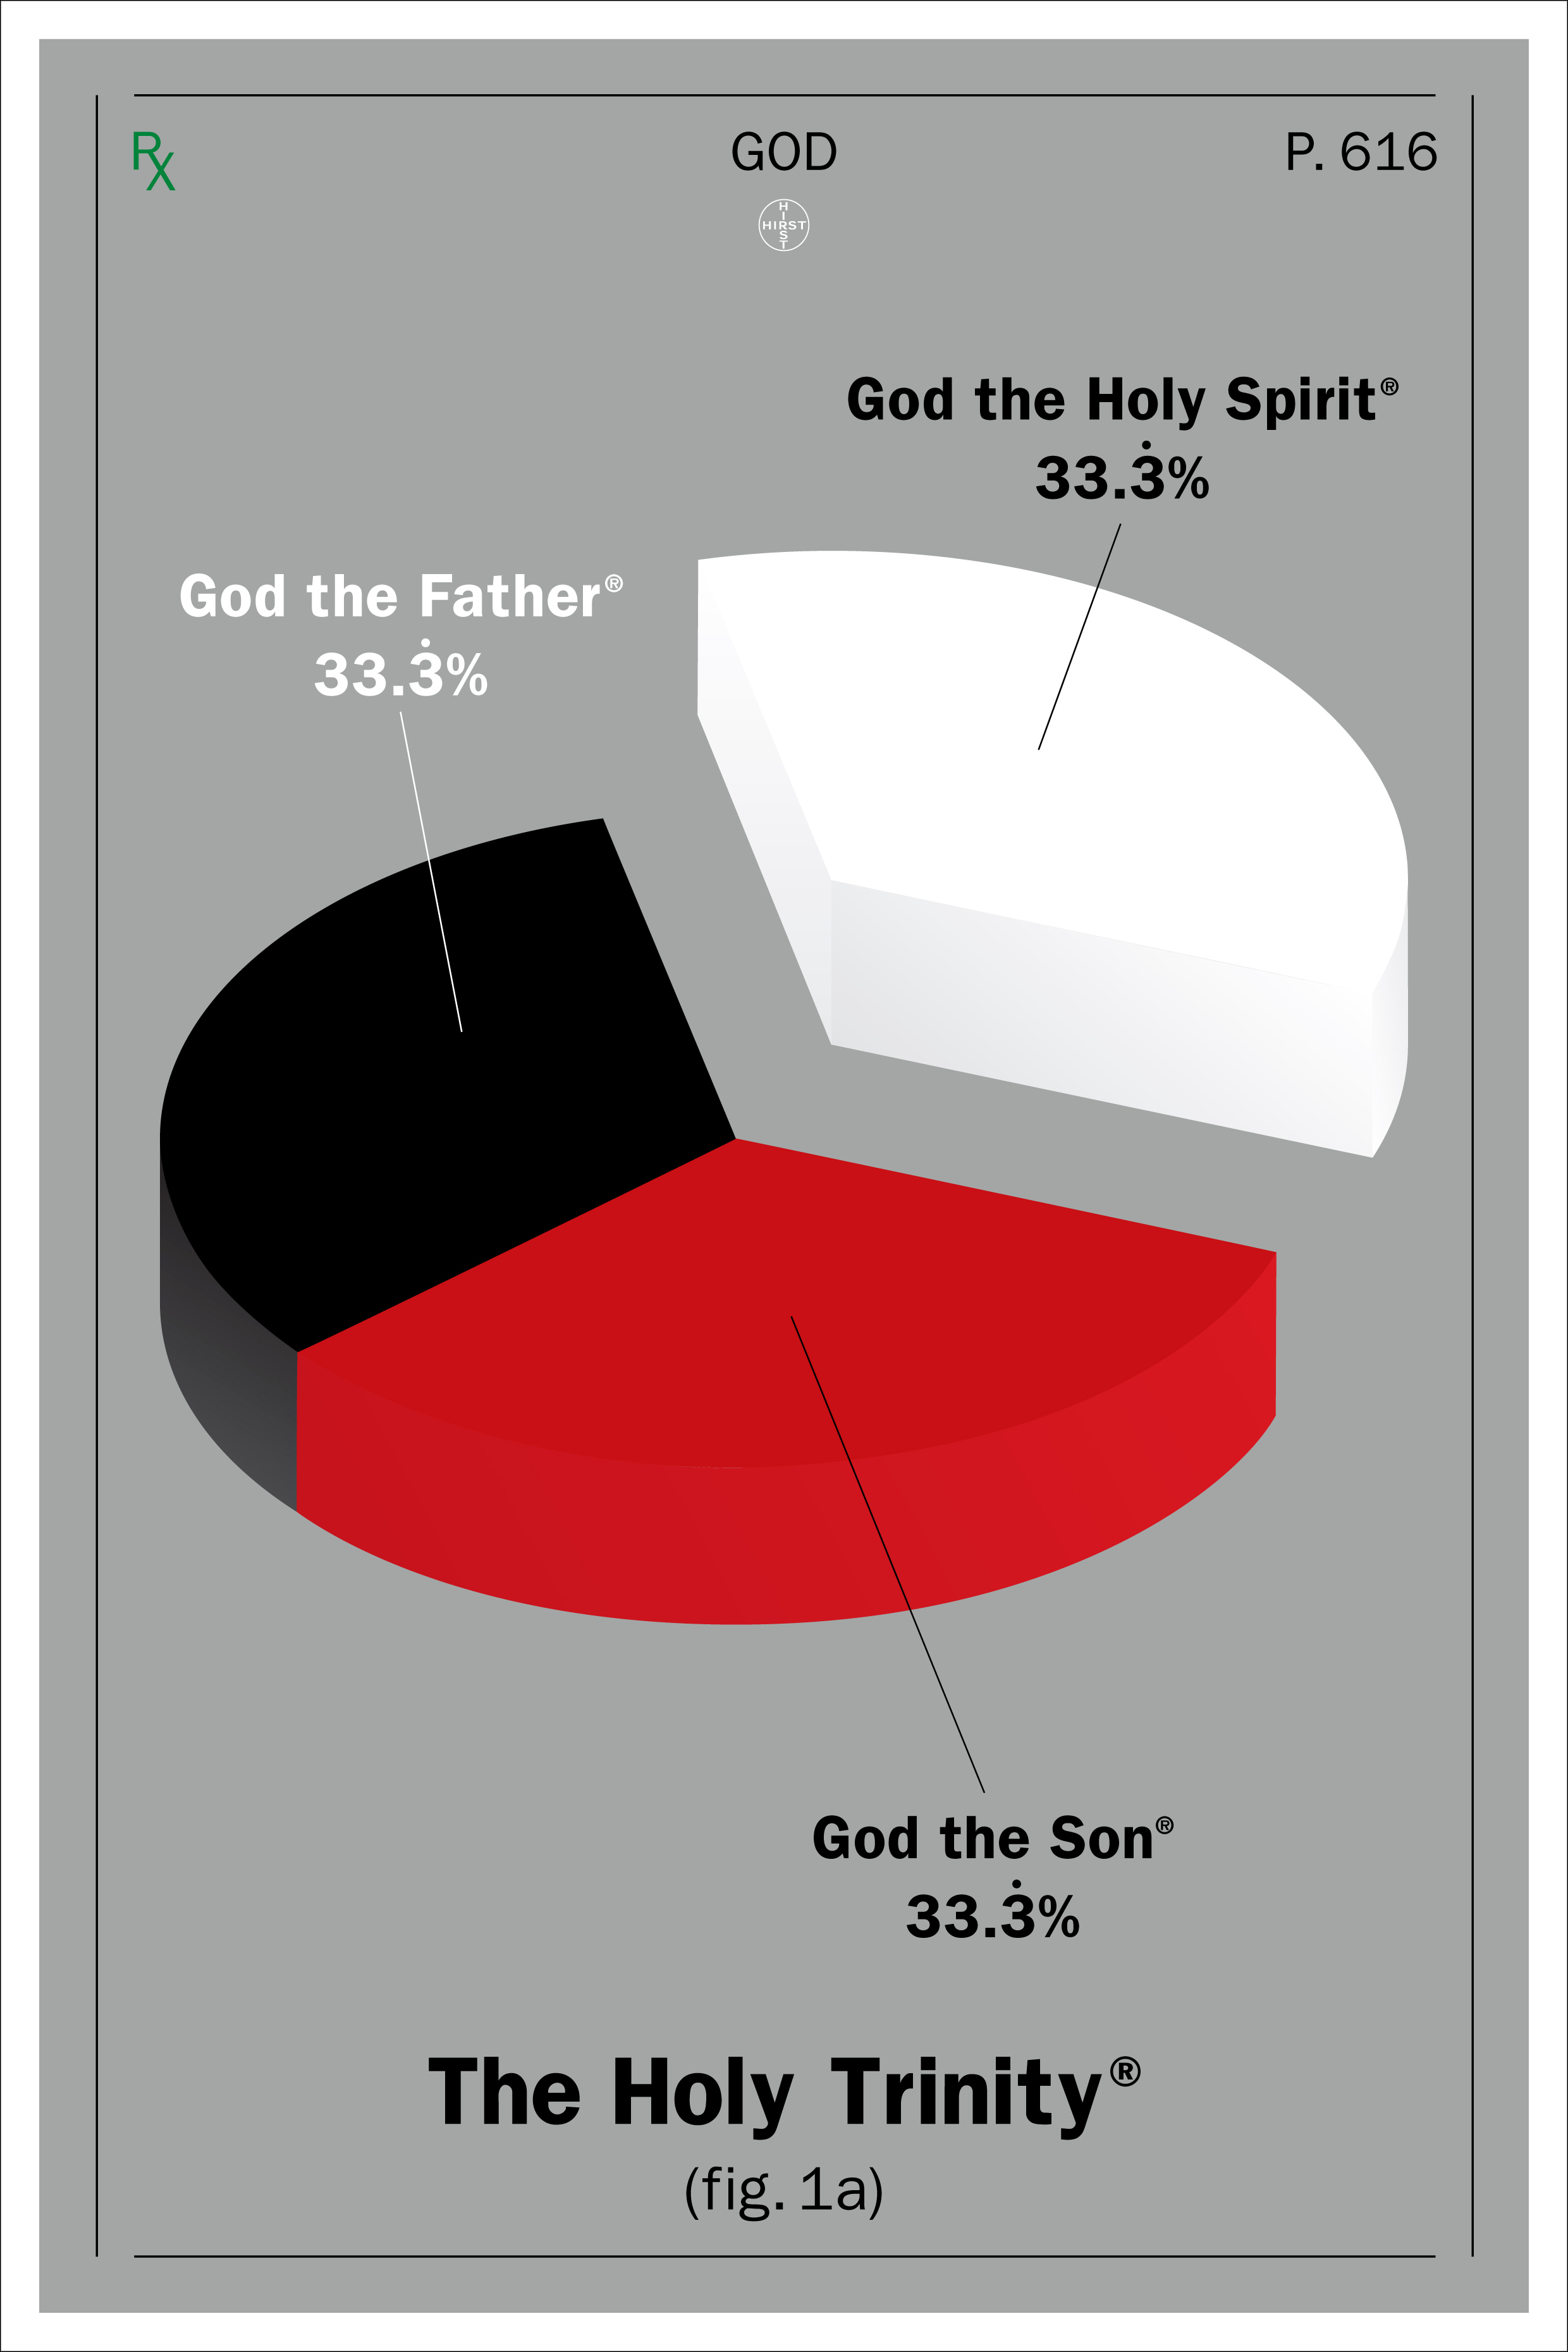 Praca artystyczna autorstwa Damiena Hirsta w postaci plakatu z szarym tłem. Na plakacie przedstawiono wykres kołowy podzielony na trzy, równe części podpisane kolejno: God the Father, God the Holy Spirit, God the son. 